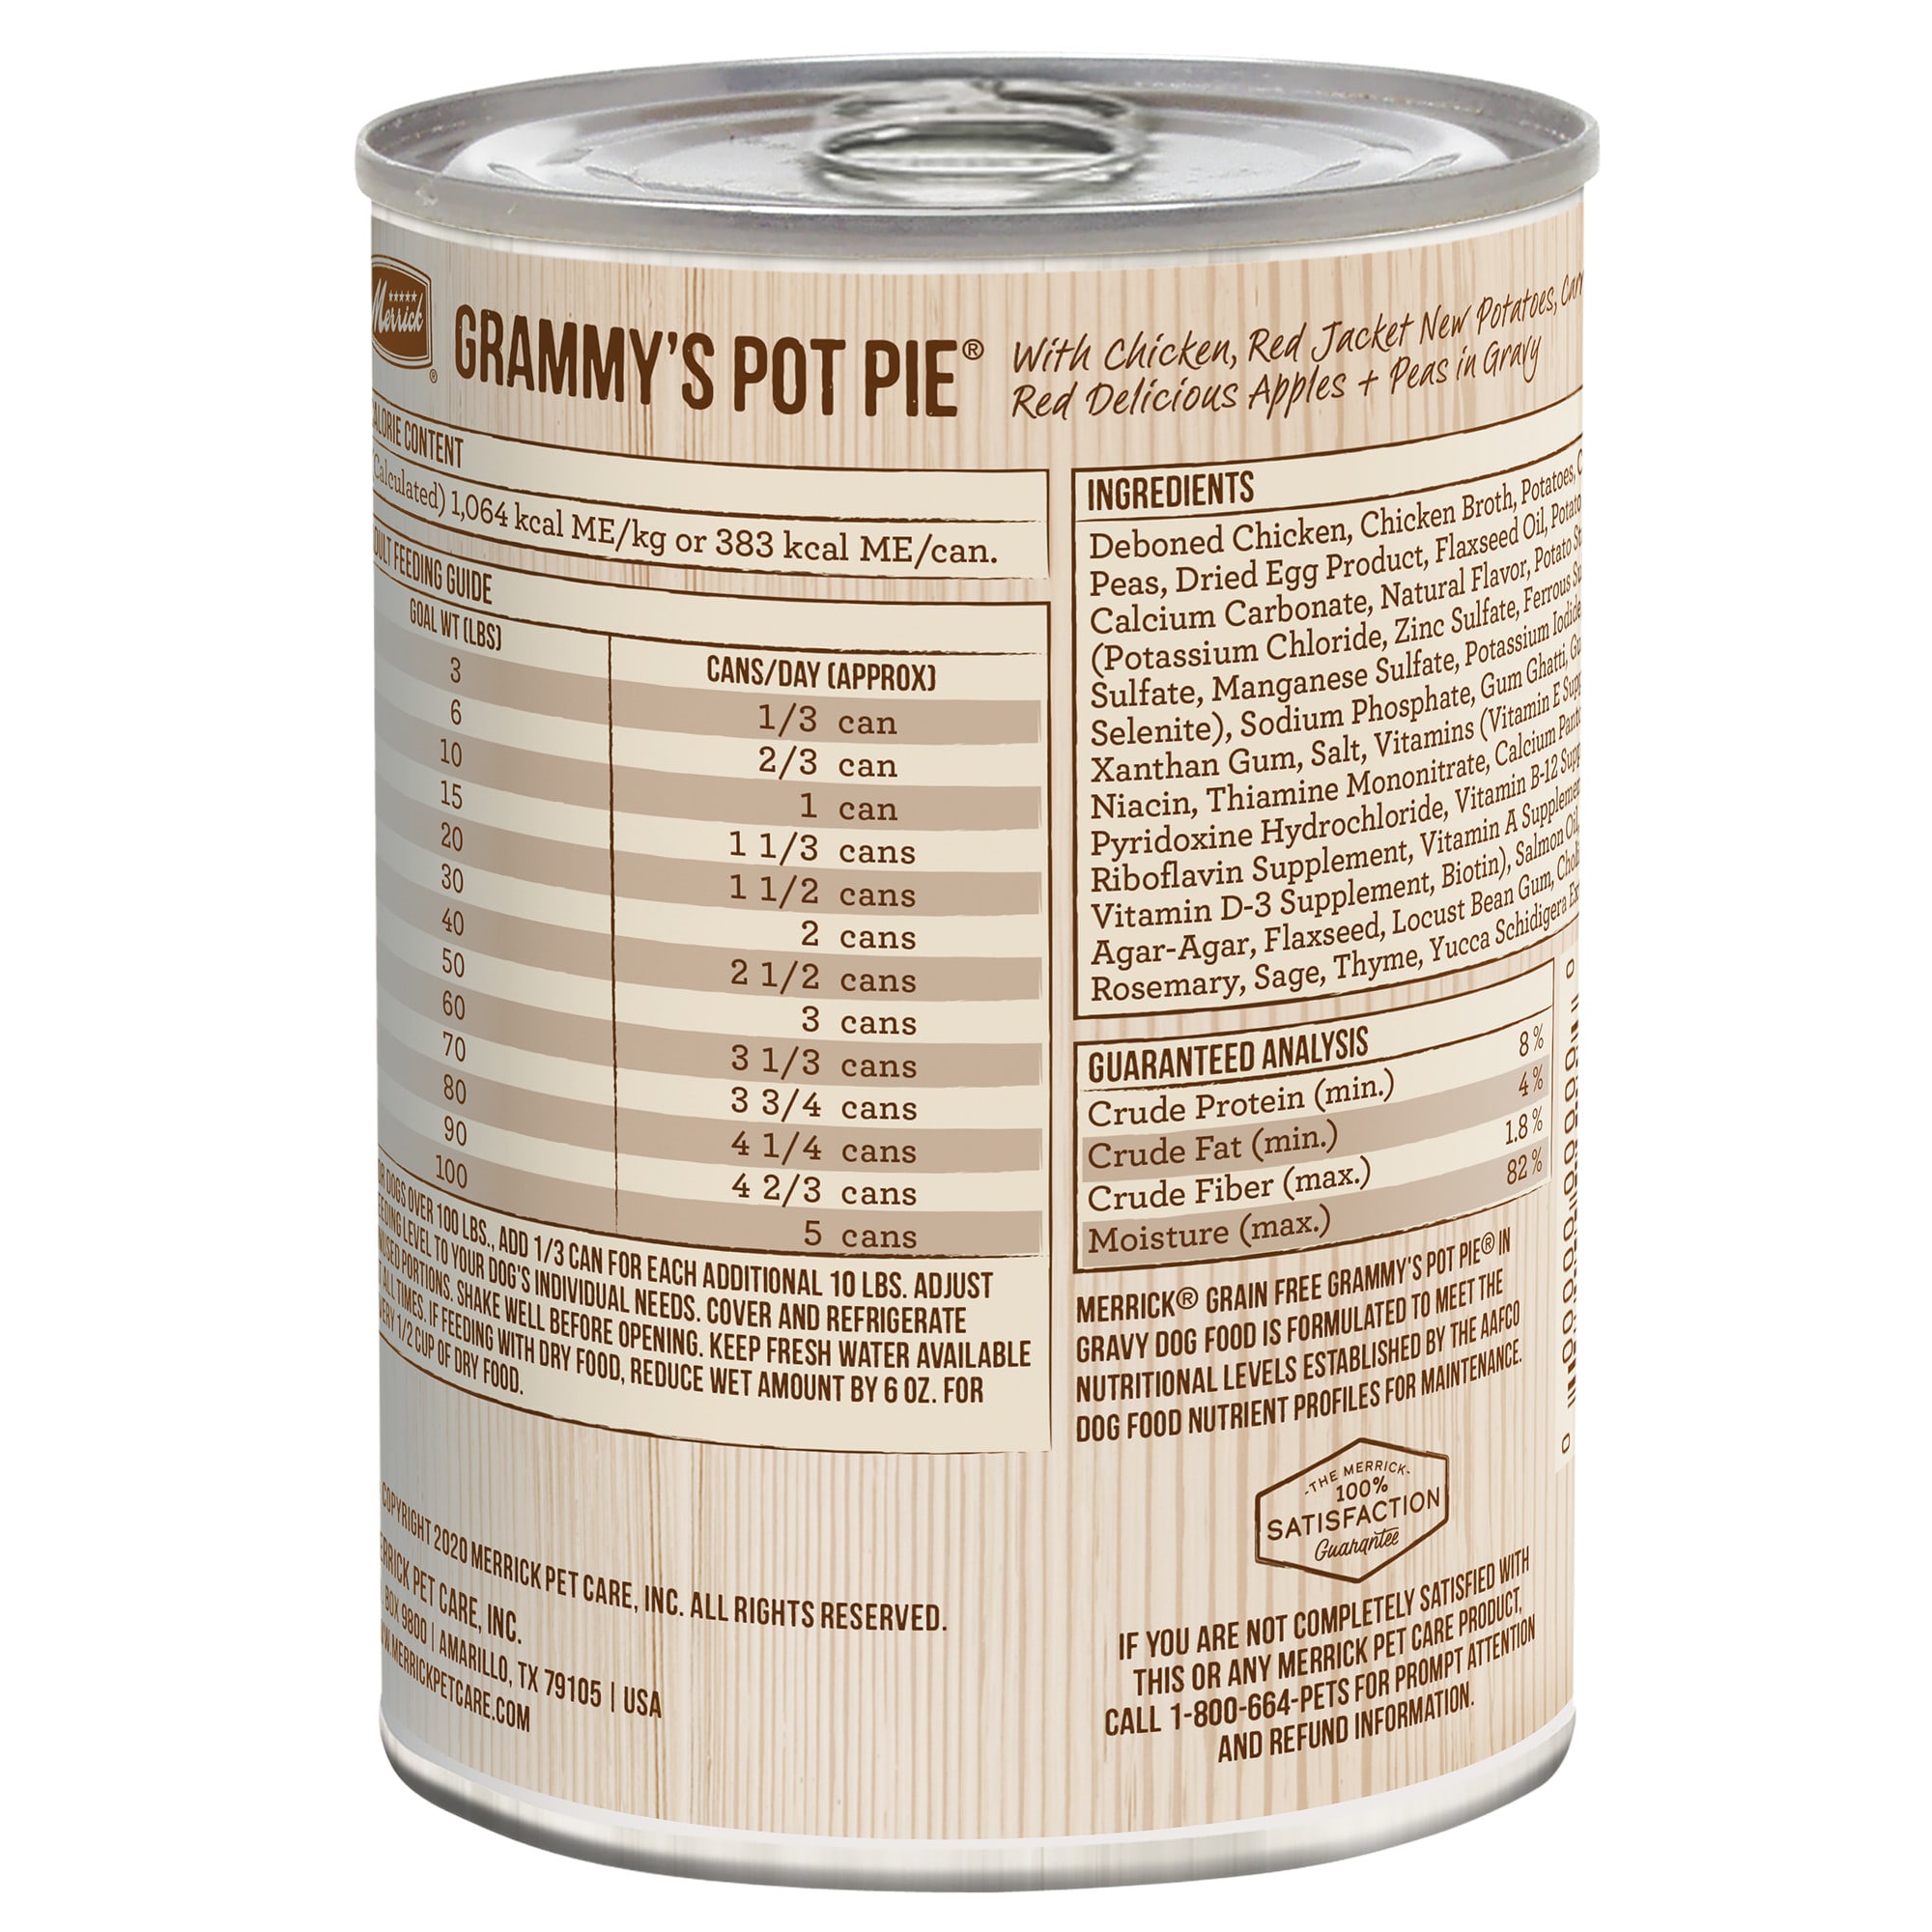 grammy's pot pie dog food